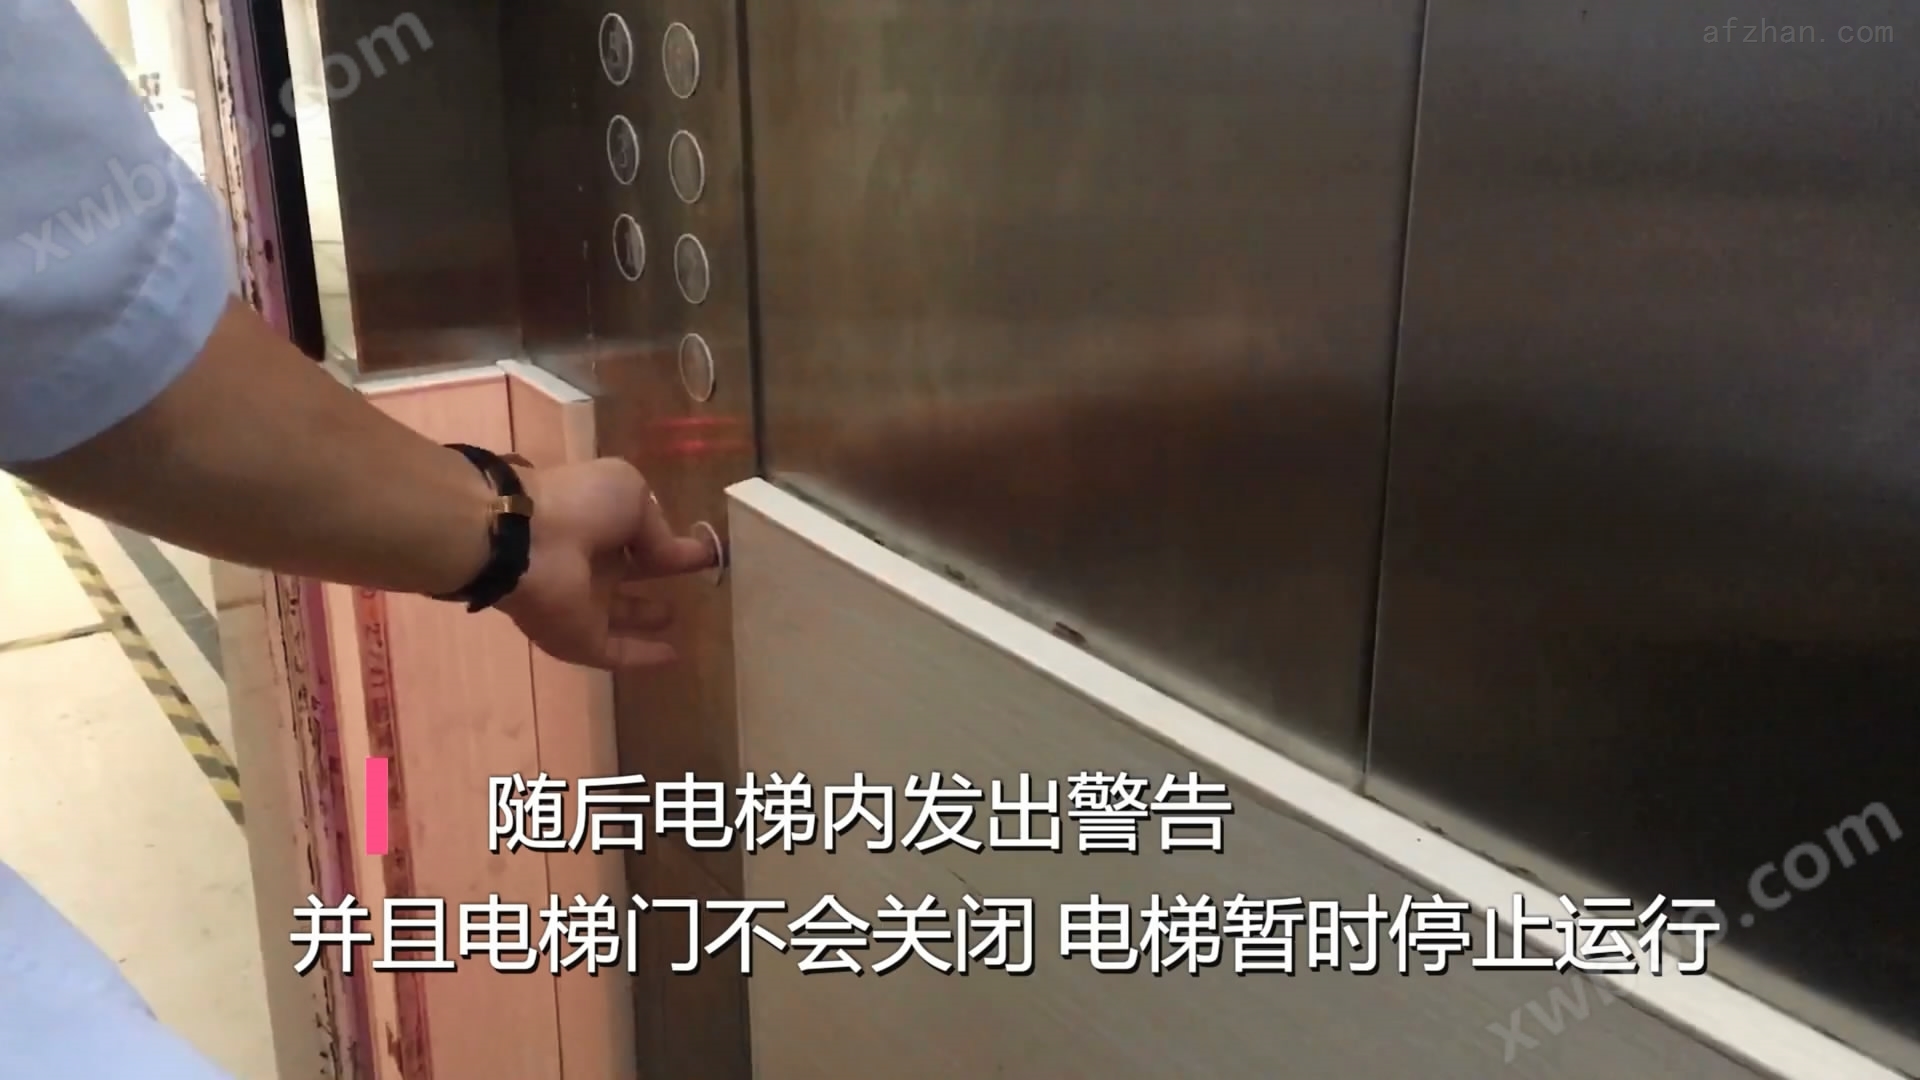 电动车禁入电梯管控系统,监测识别报警